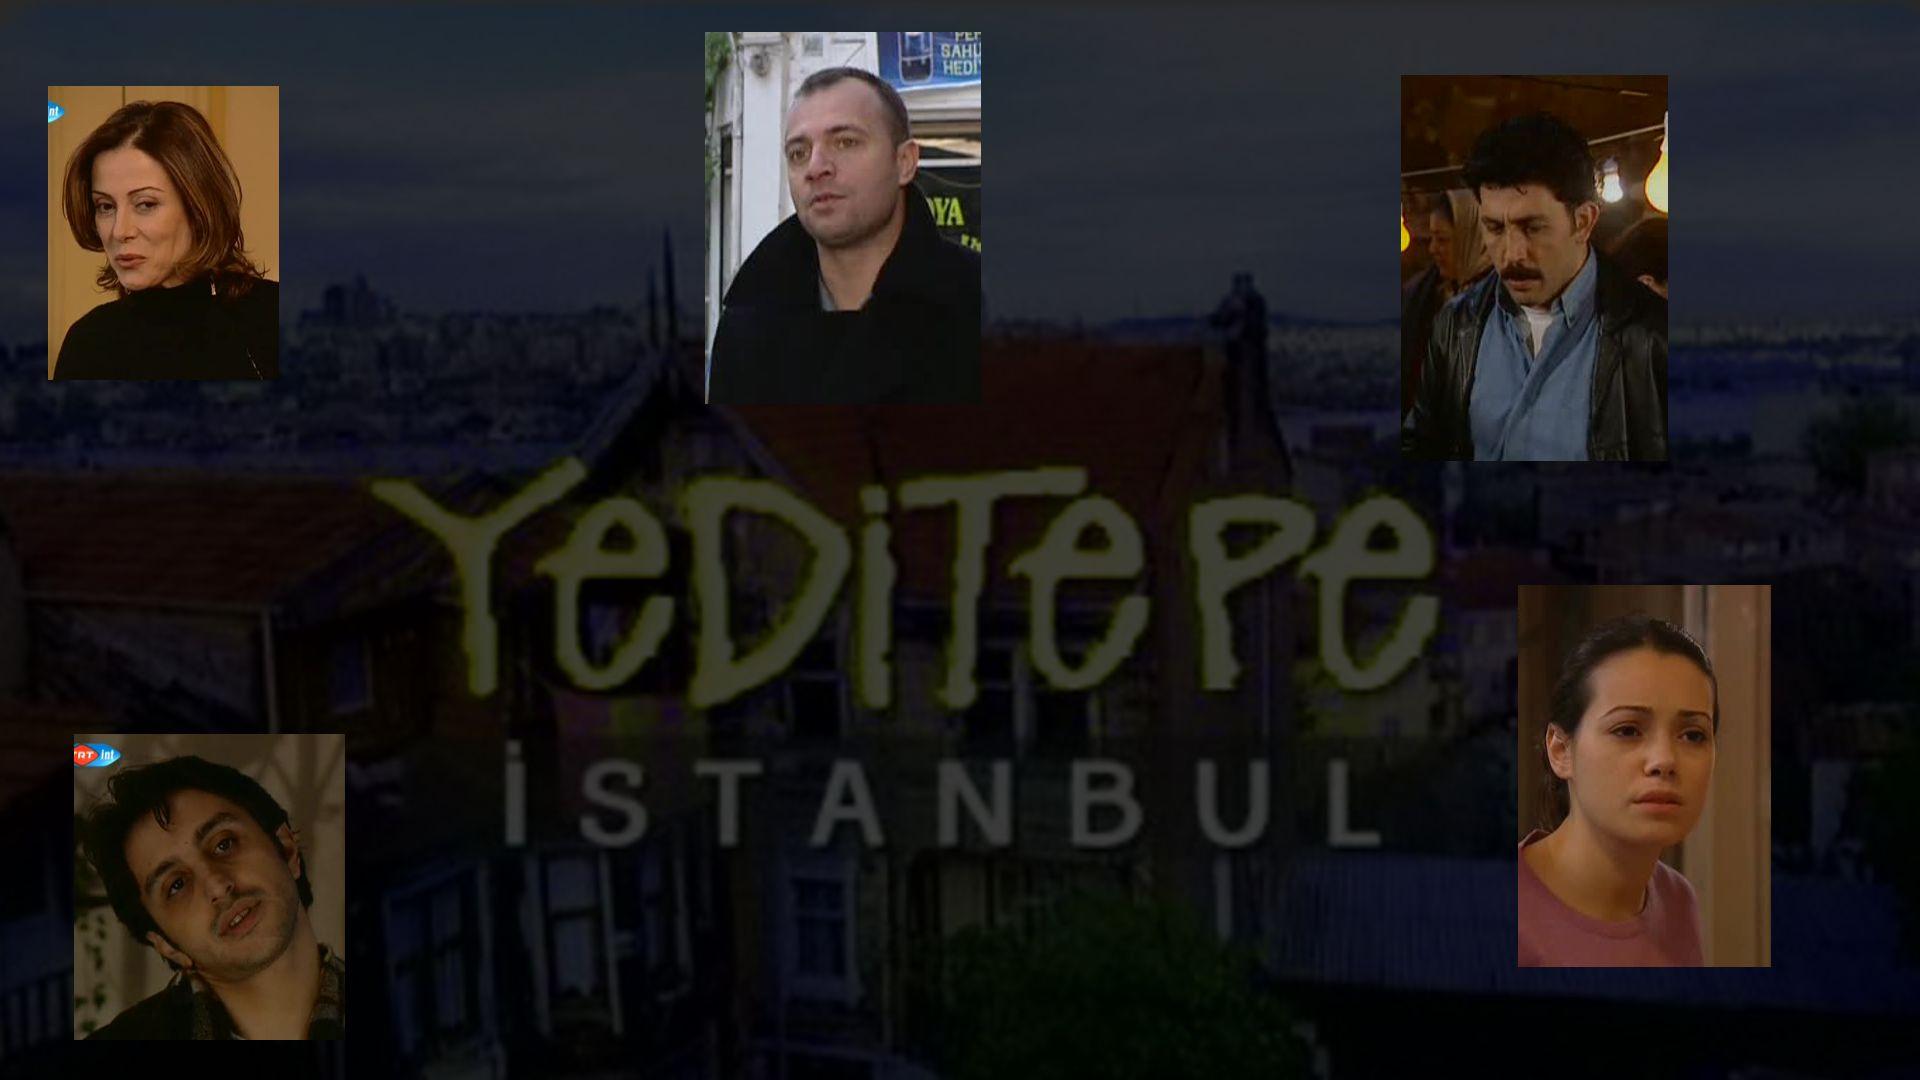 Yeditepe Istanbul